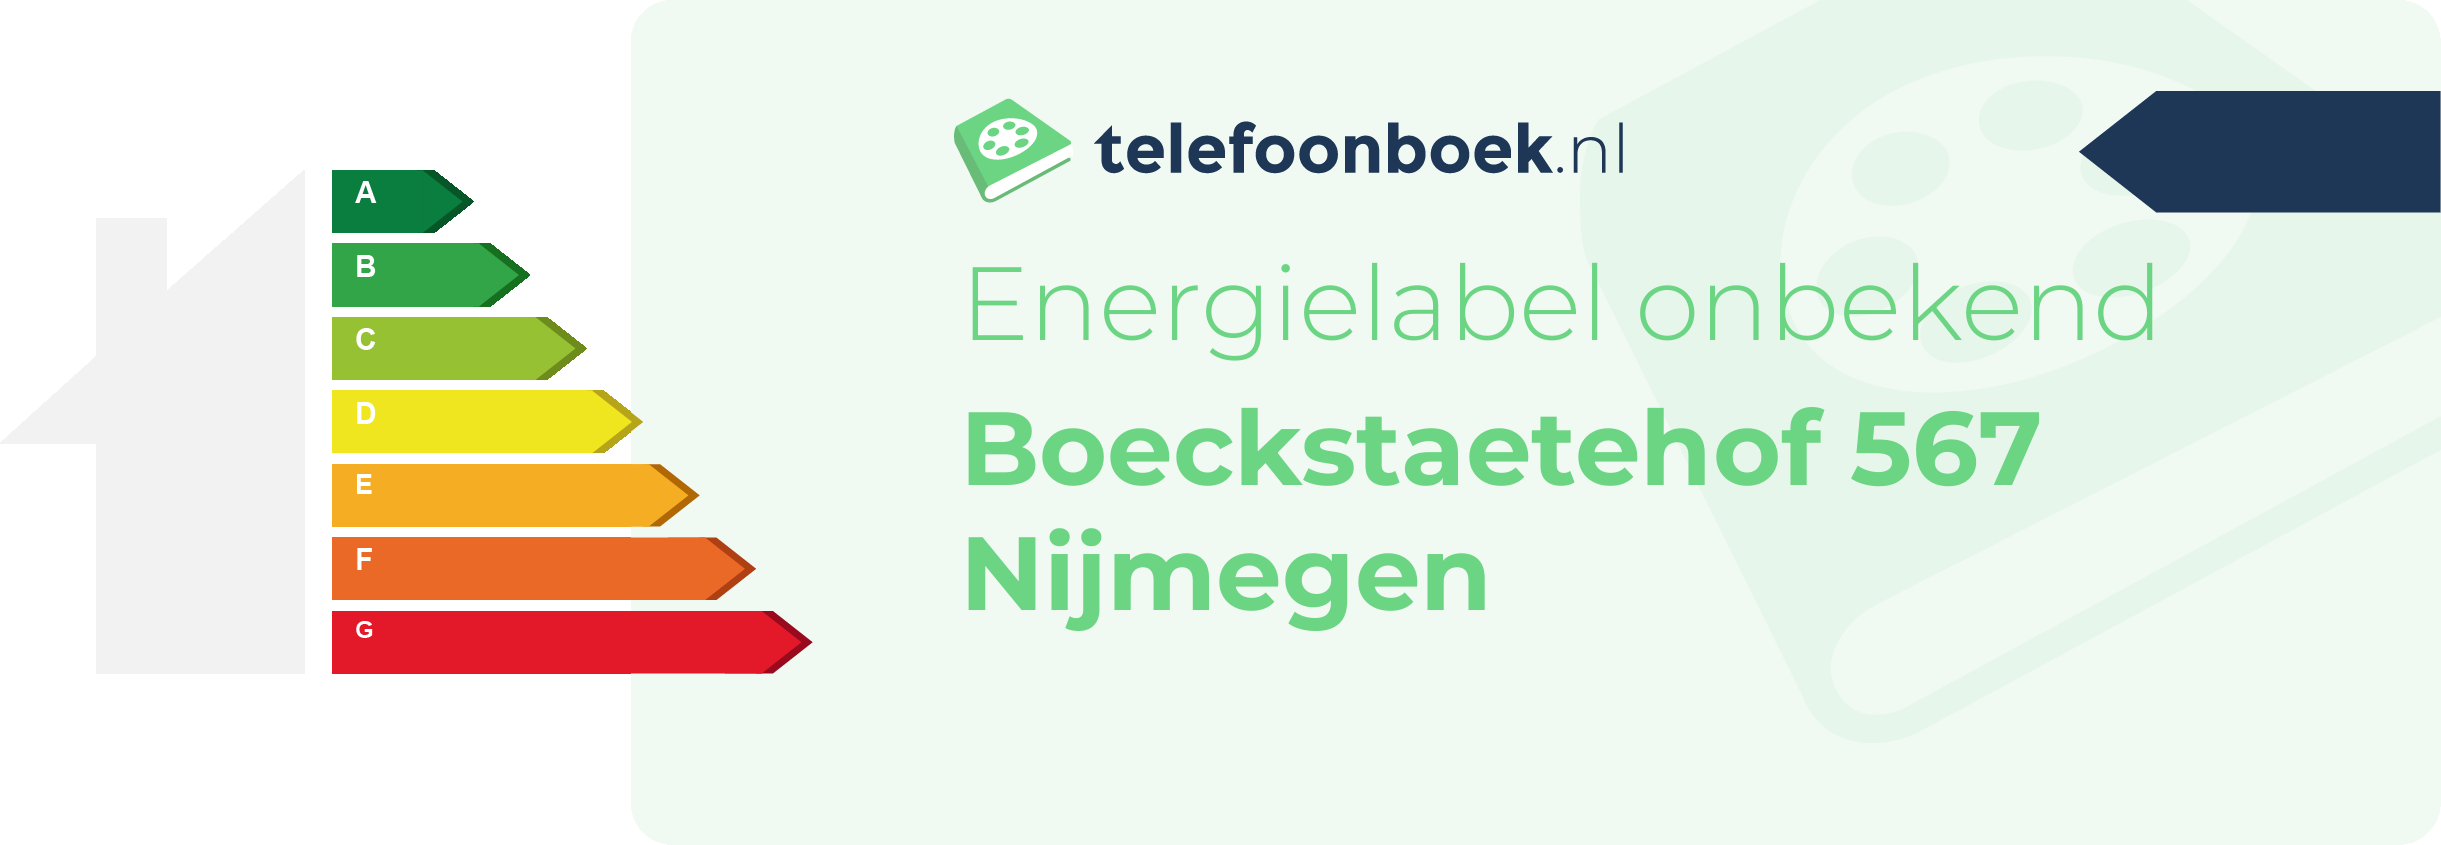 Energielabel Boeckstaetehof 567 Nijmegen